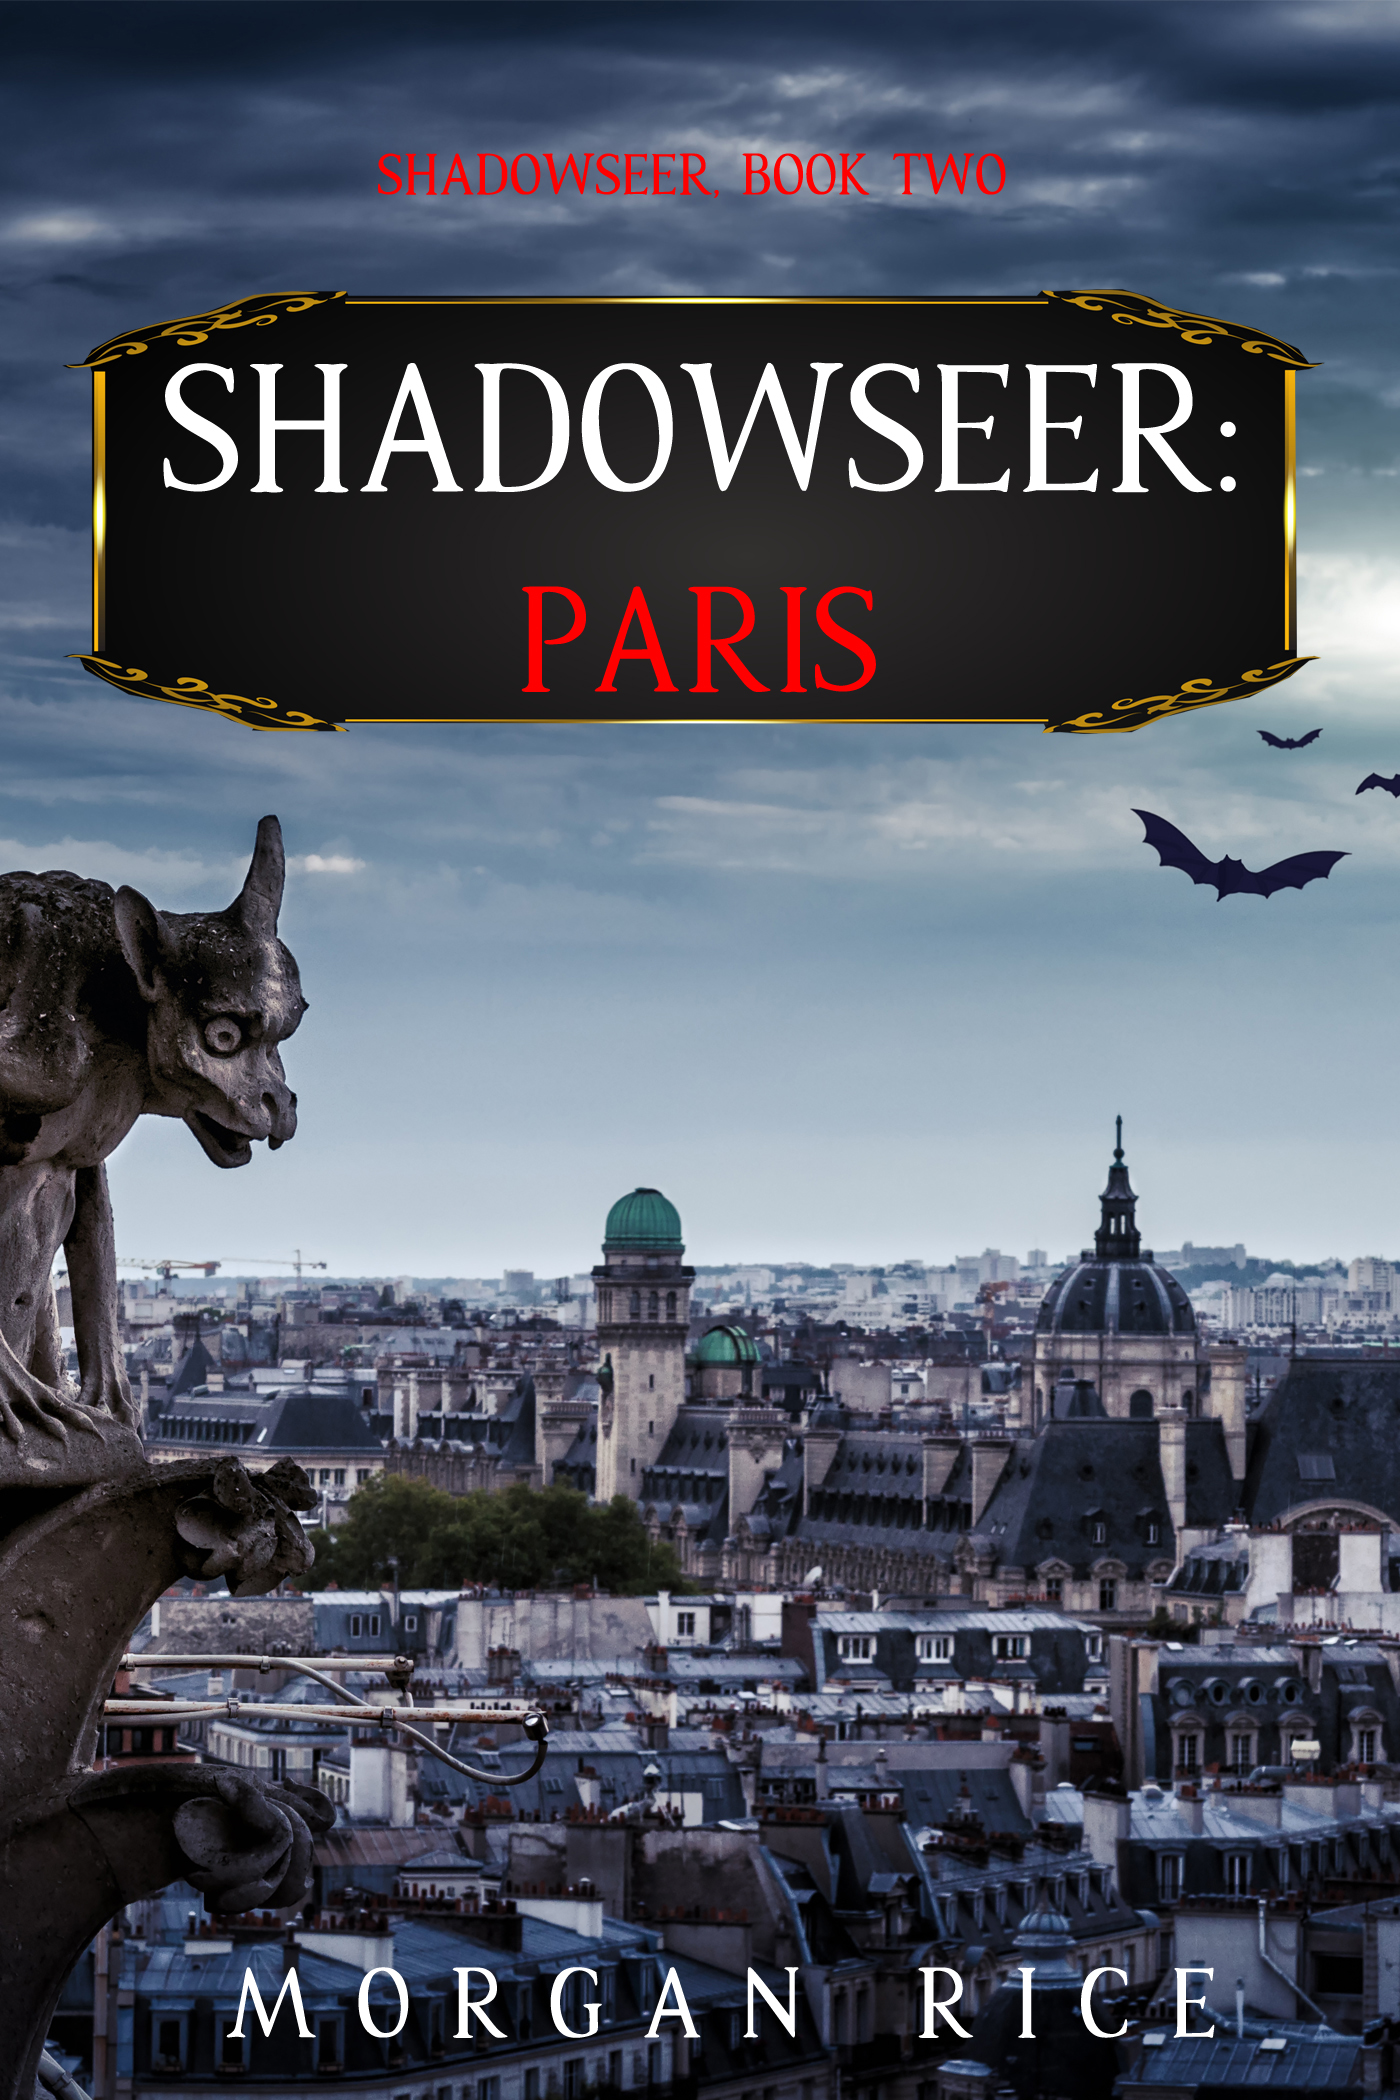 Shadowseer: Paris